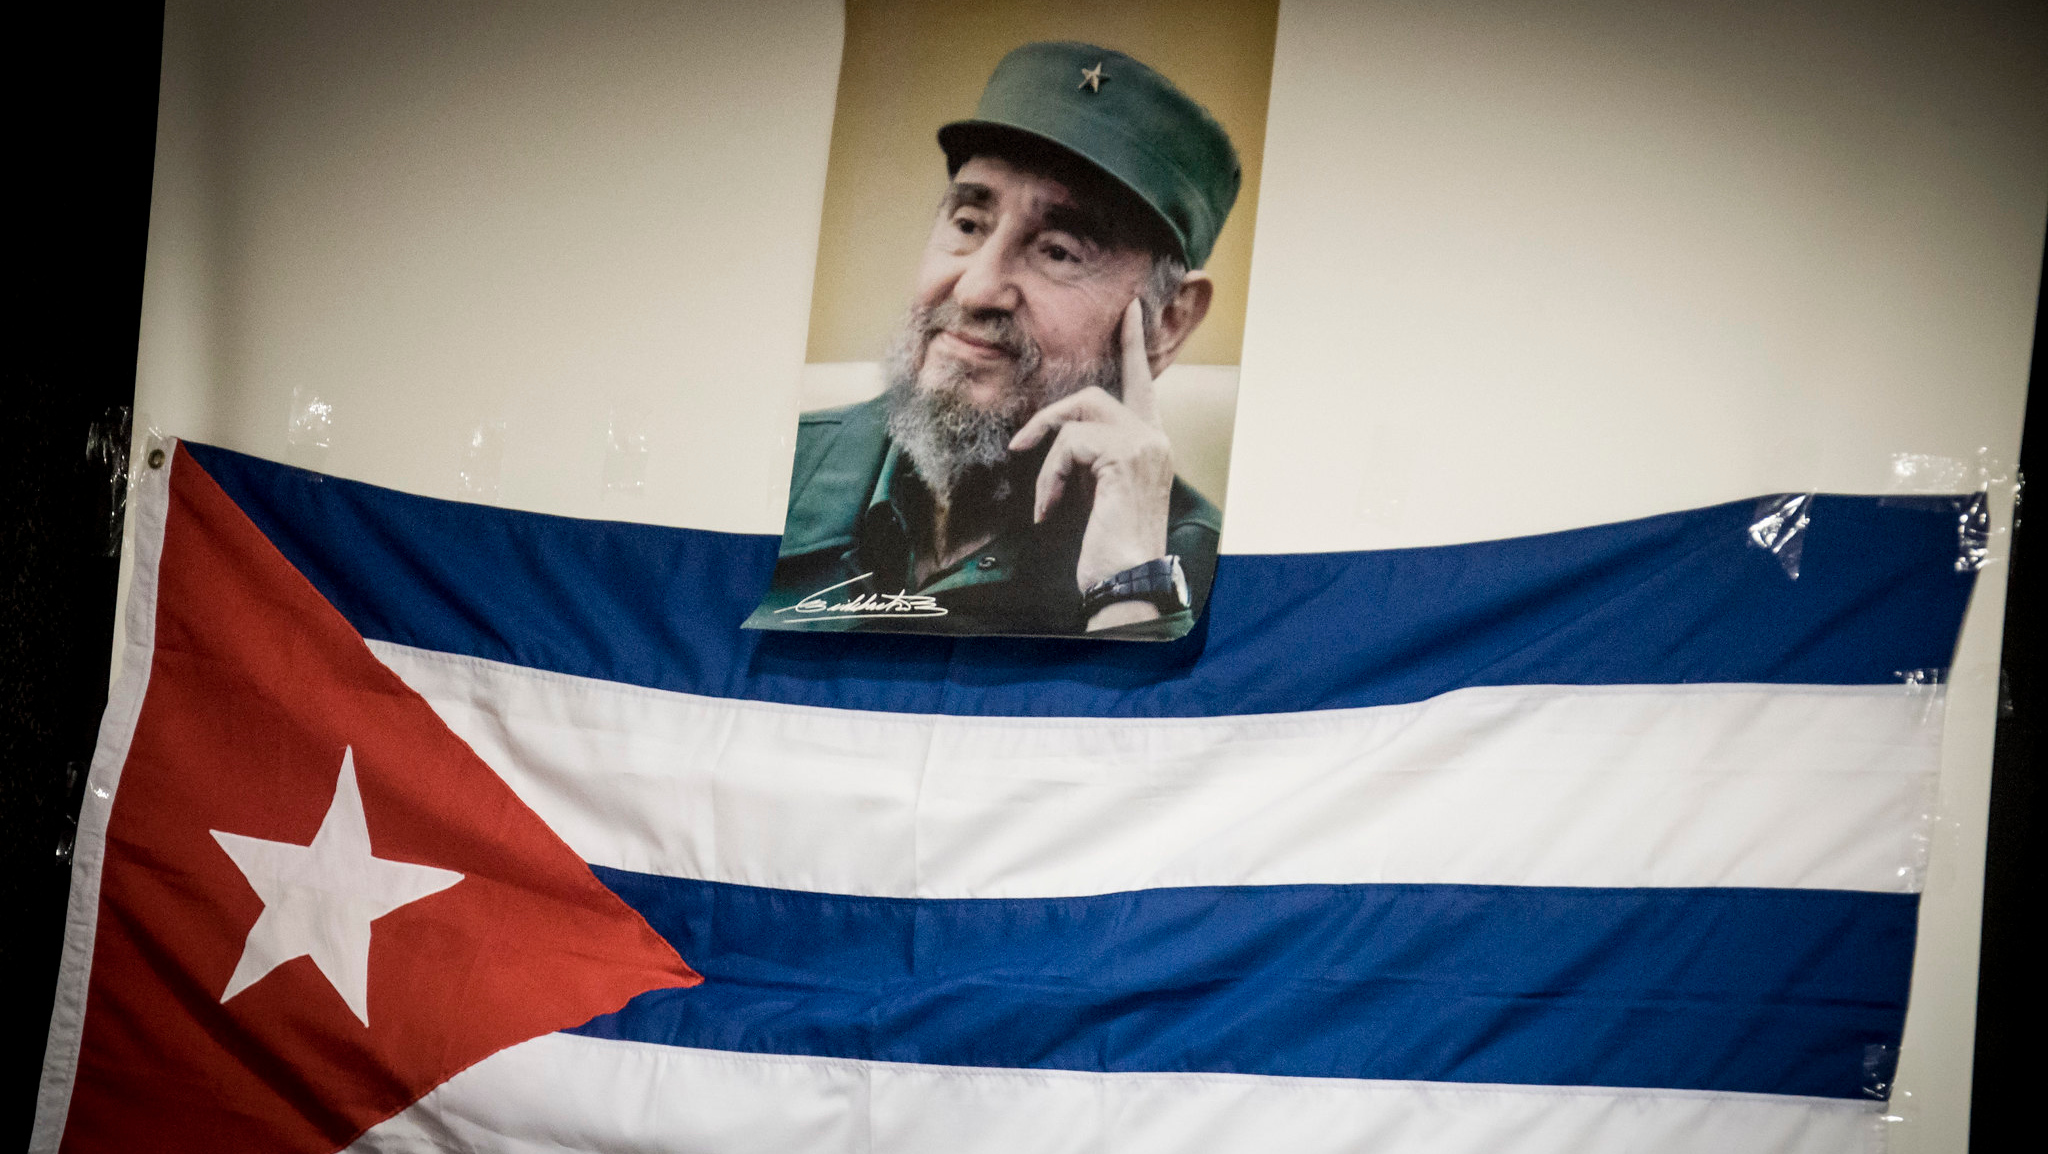 Фотография Фиделя Кастро и флаг Кубы